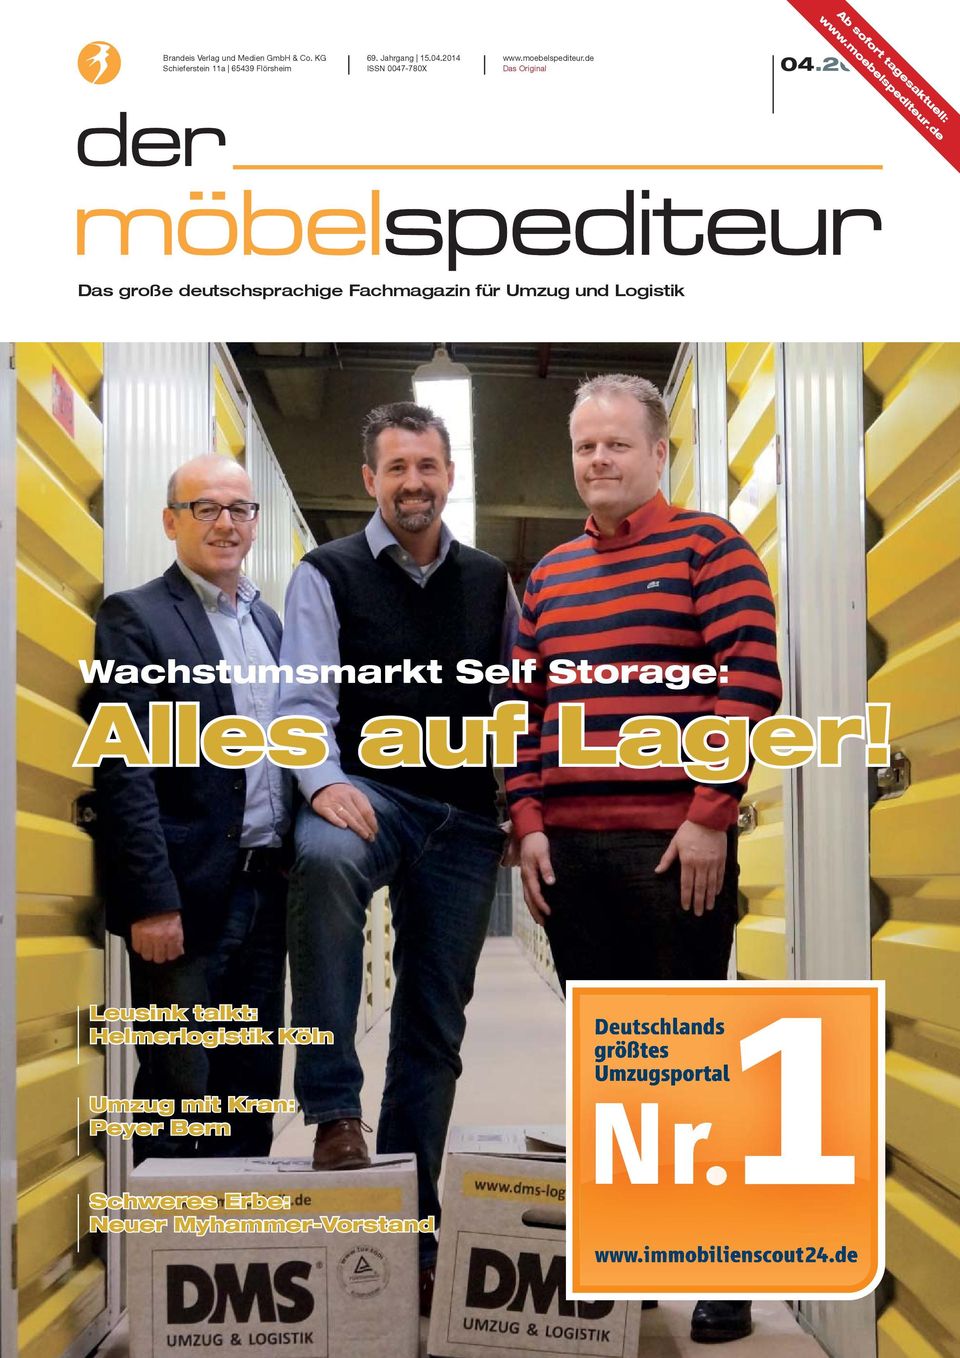 2014 Das große deutschsprachige Fachmagazin für Umzug und Logistik Wachstumsmarkt Self Storage: Alles